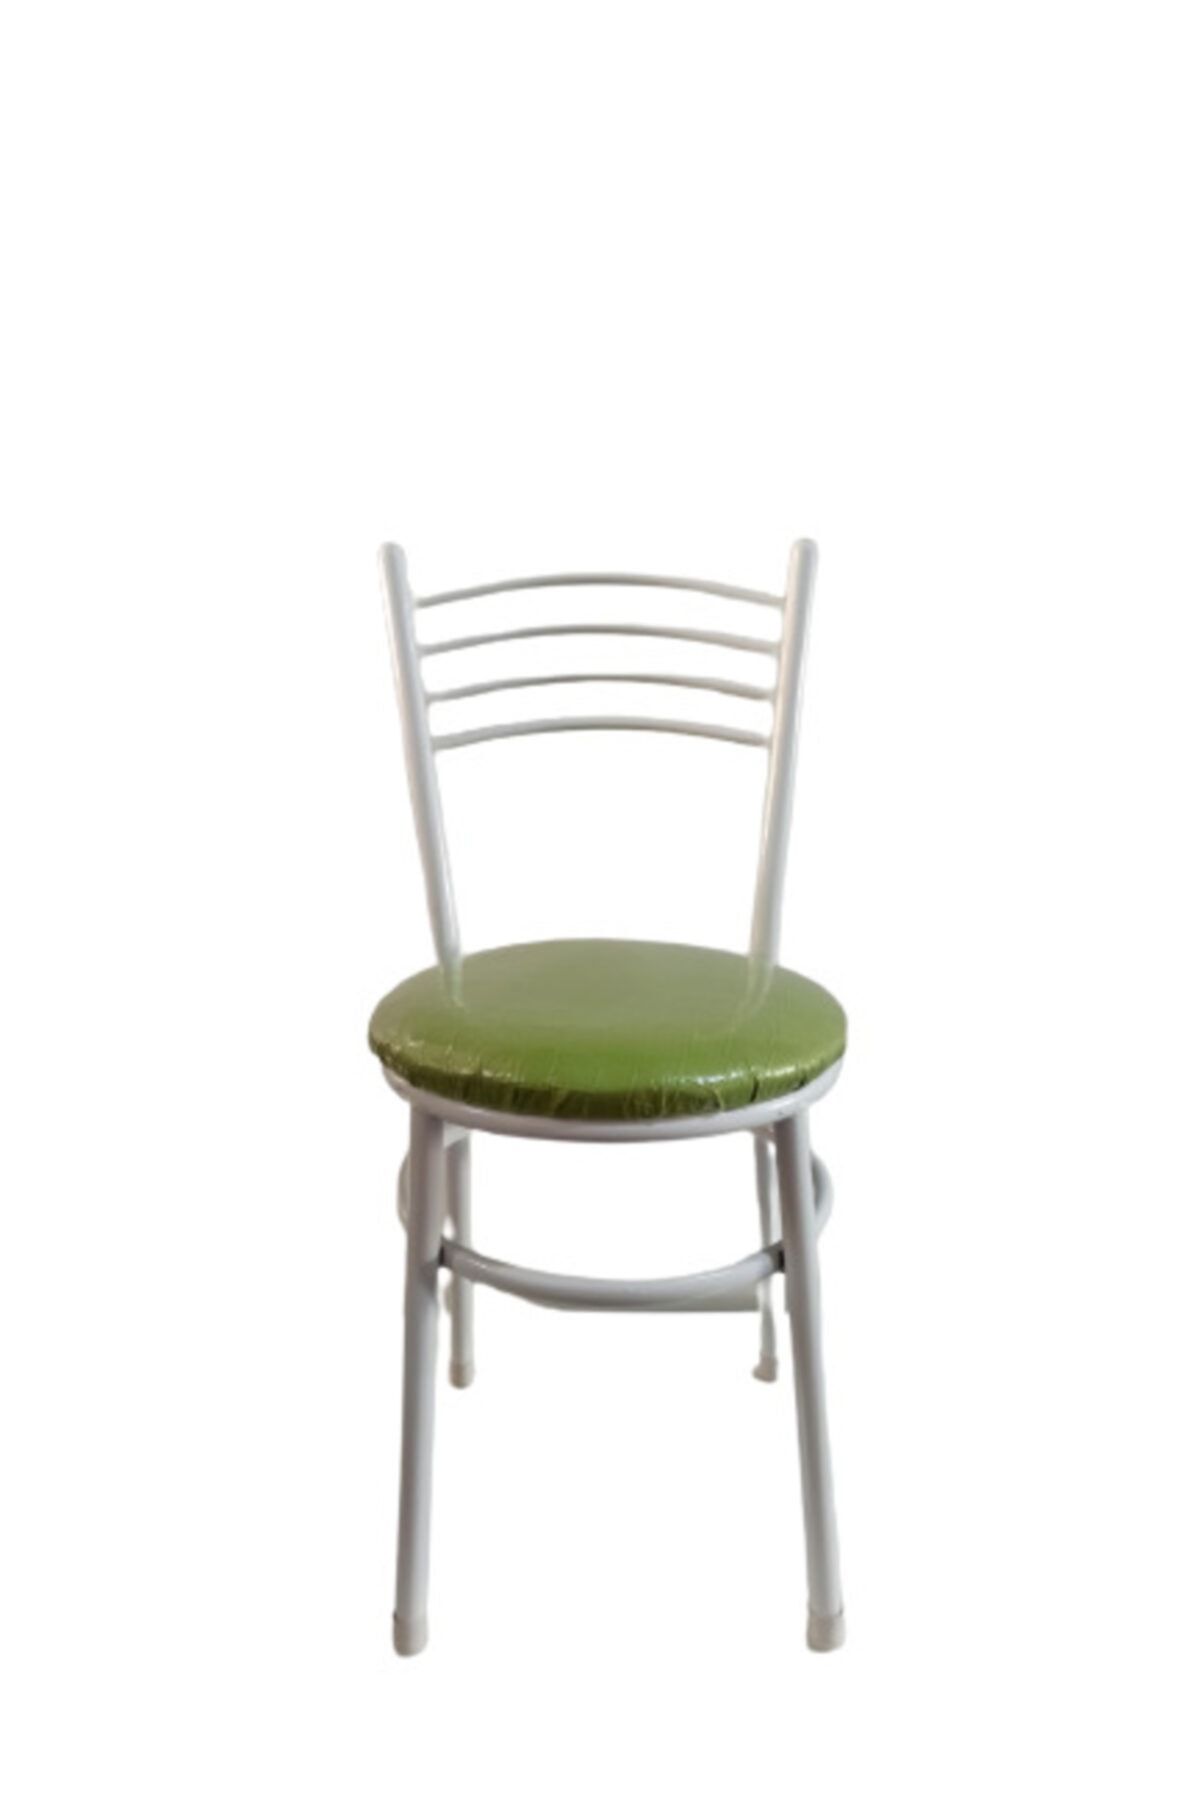 yılmaz masacılık Tatlı 5 Adet Yeşil Mutfak Bahçe Sandalyesi